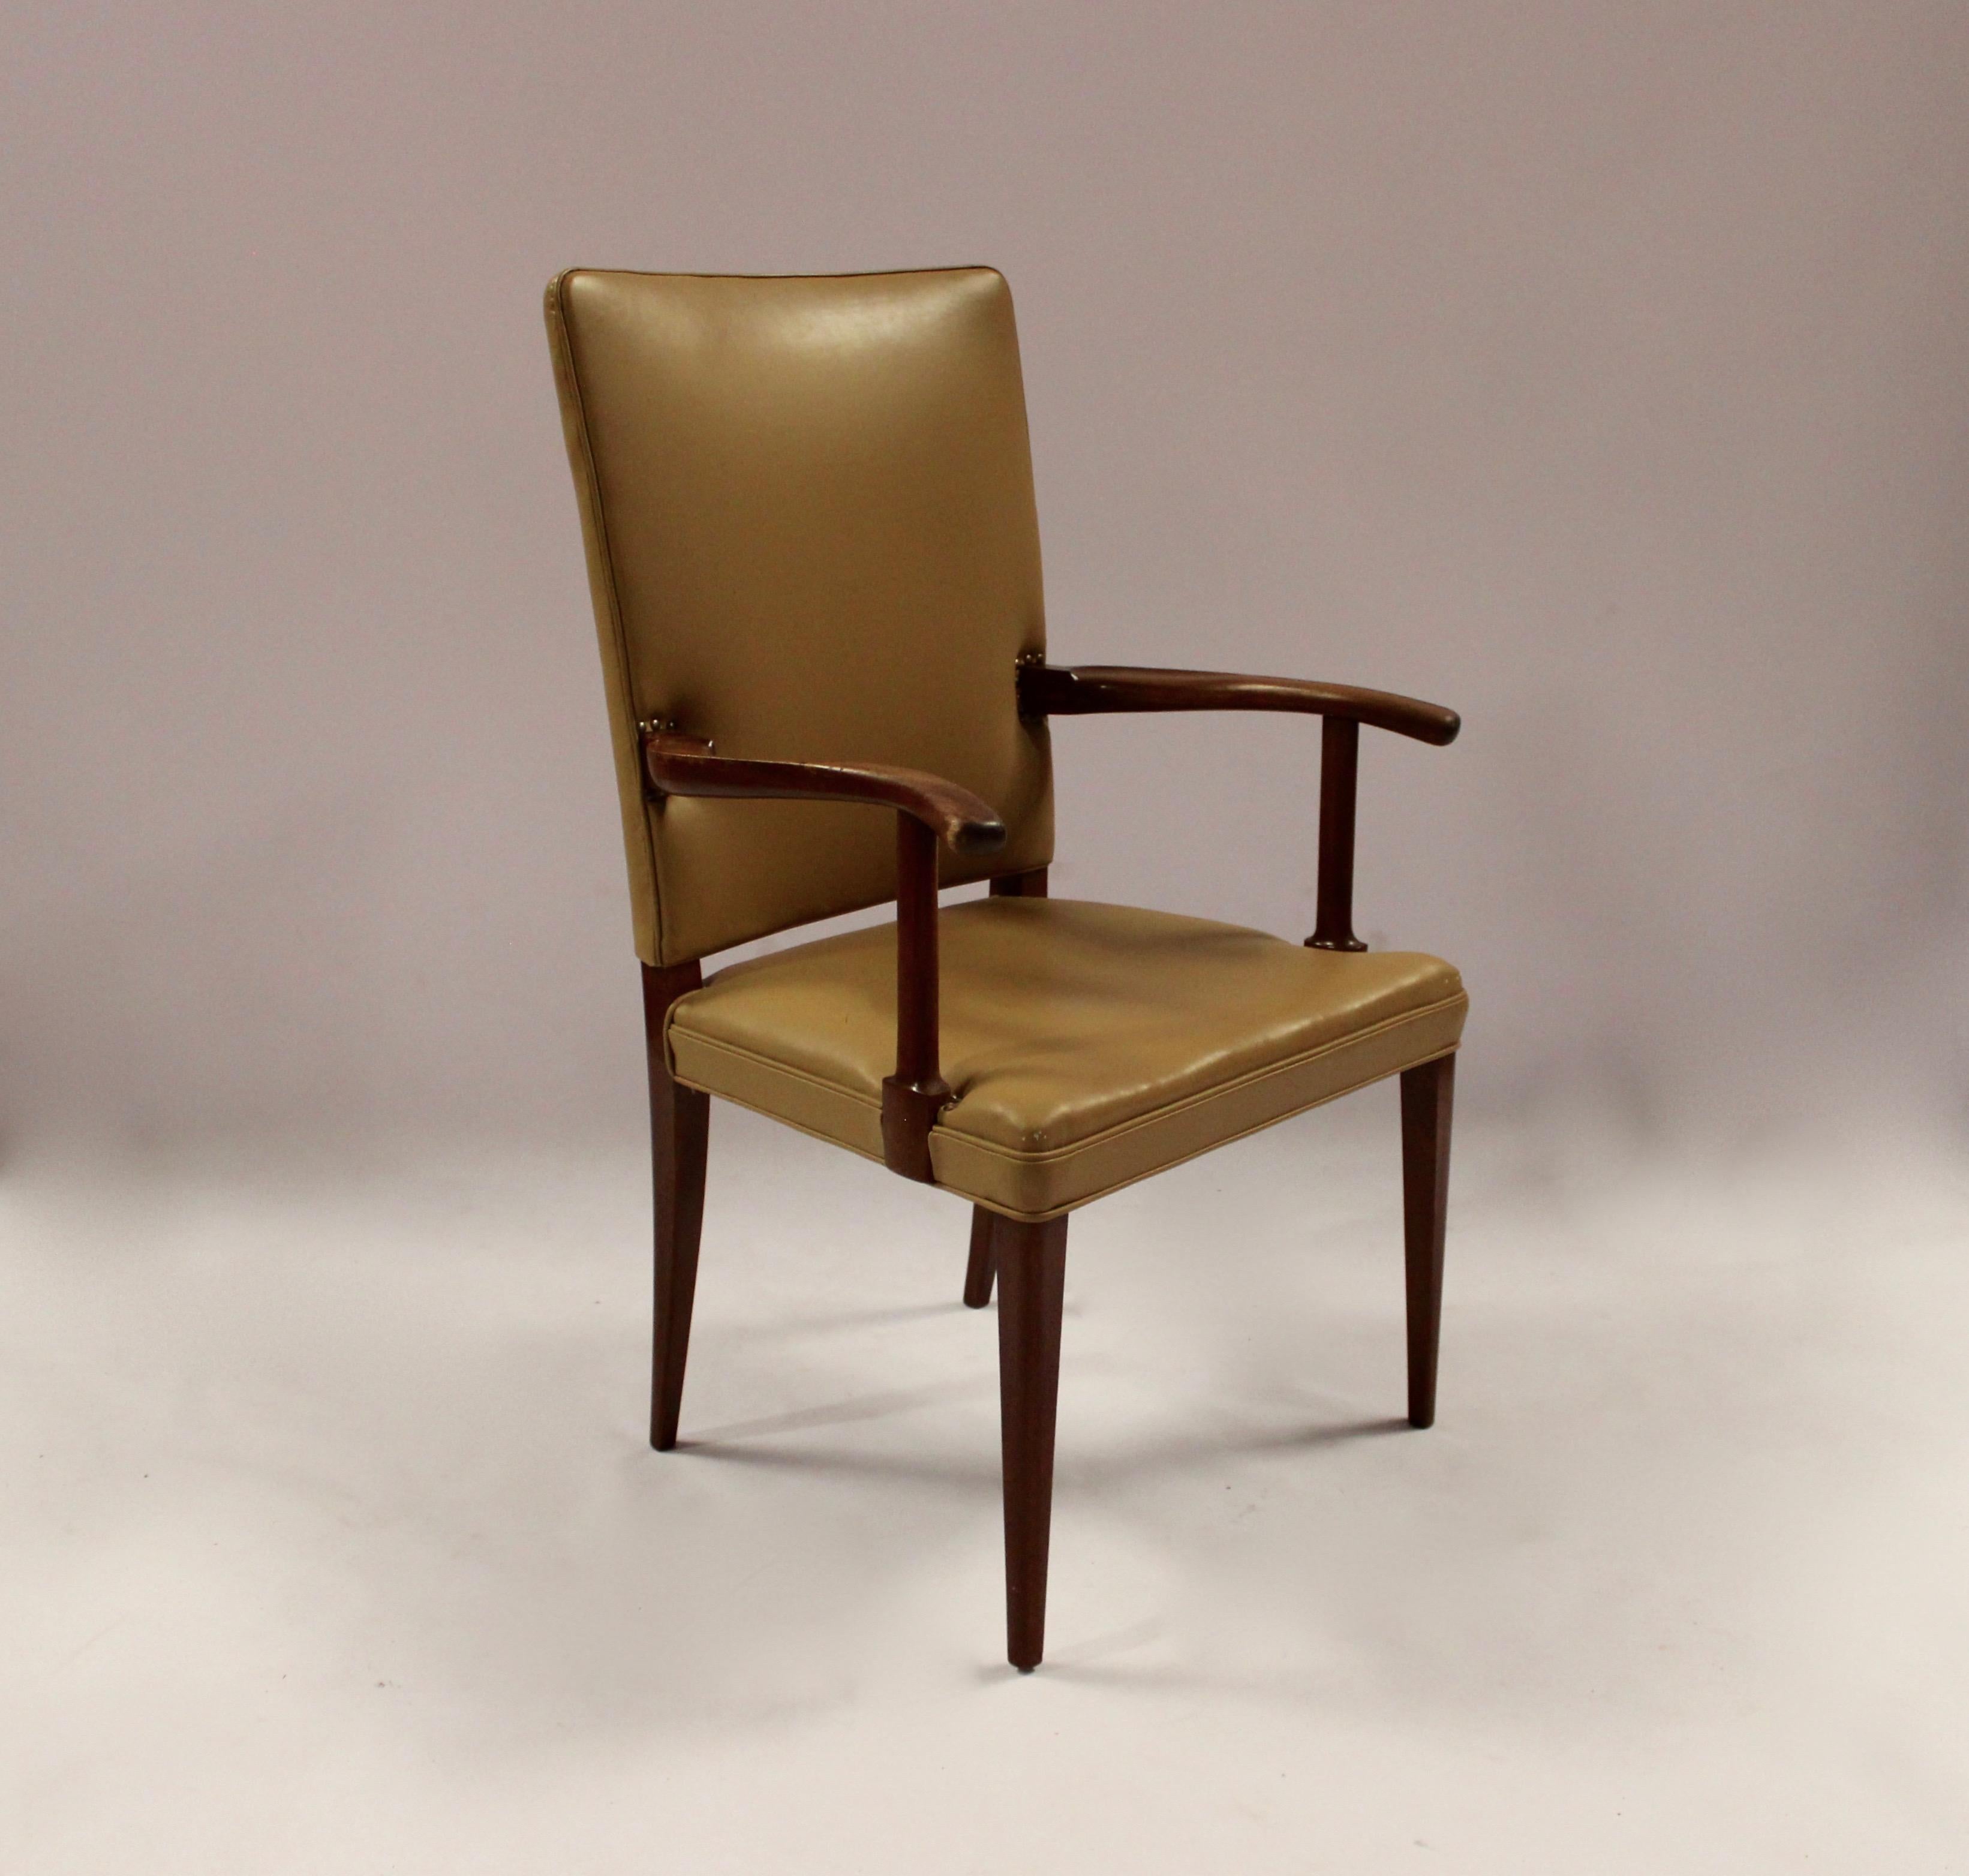 Dieser Sessel ist ein schönes Beispiel für dänisches Design aus den 1950er Jahren, entworfen von dem bekannten Möbeldesigner Jacob Kjær. Der Stuhl ist aus Mahagoniholz gefertigt, das Wärme und Eleganz ausstrahlt. Der helle Lederbezug verleiht dem